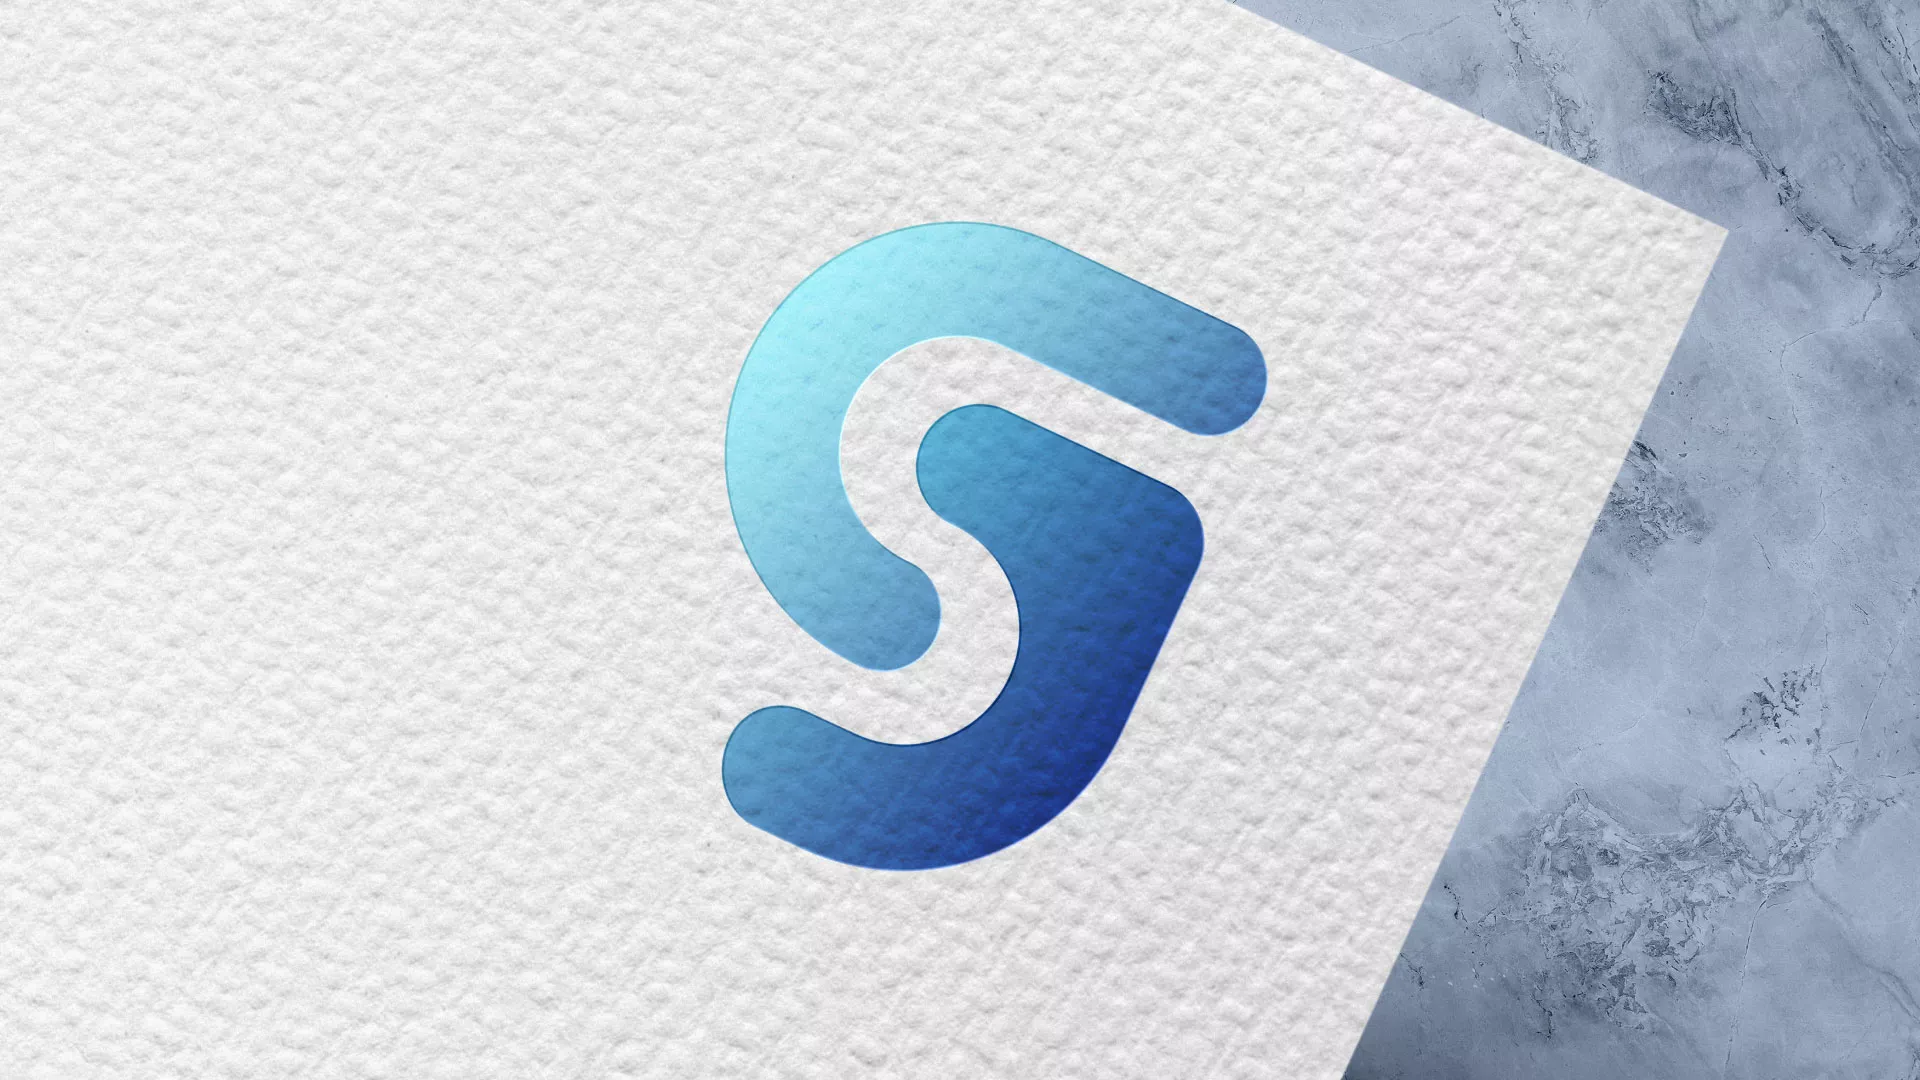 Разработка логотипа газовой компании «Сервис газ» в Шарье